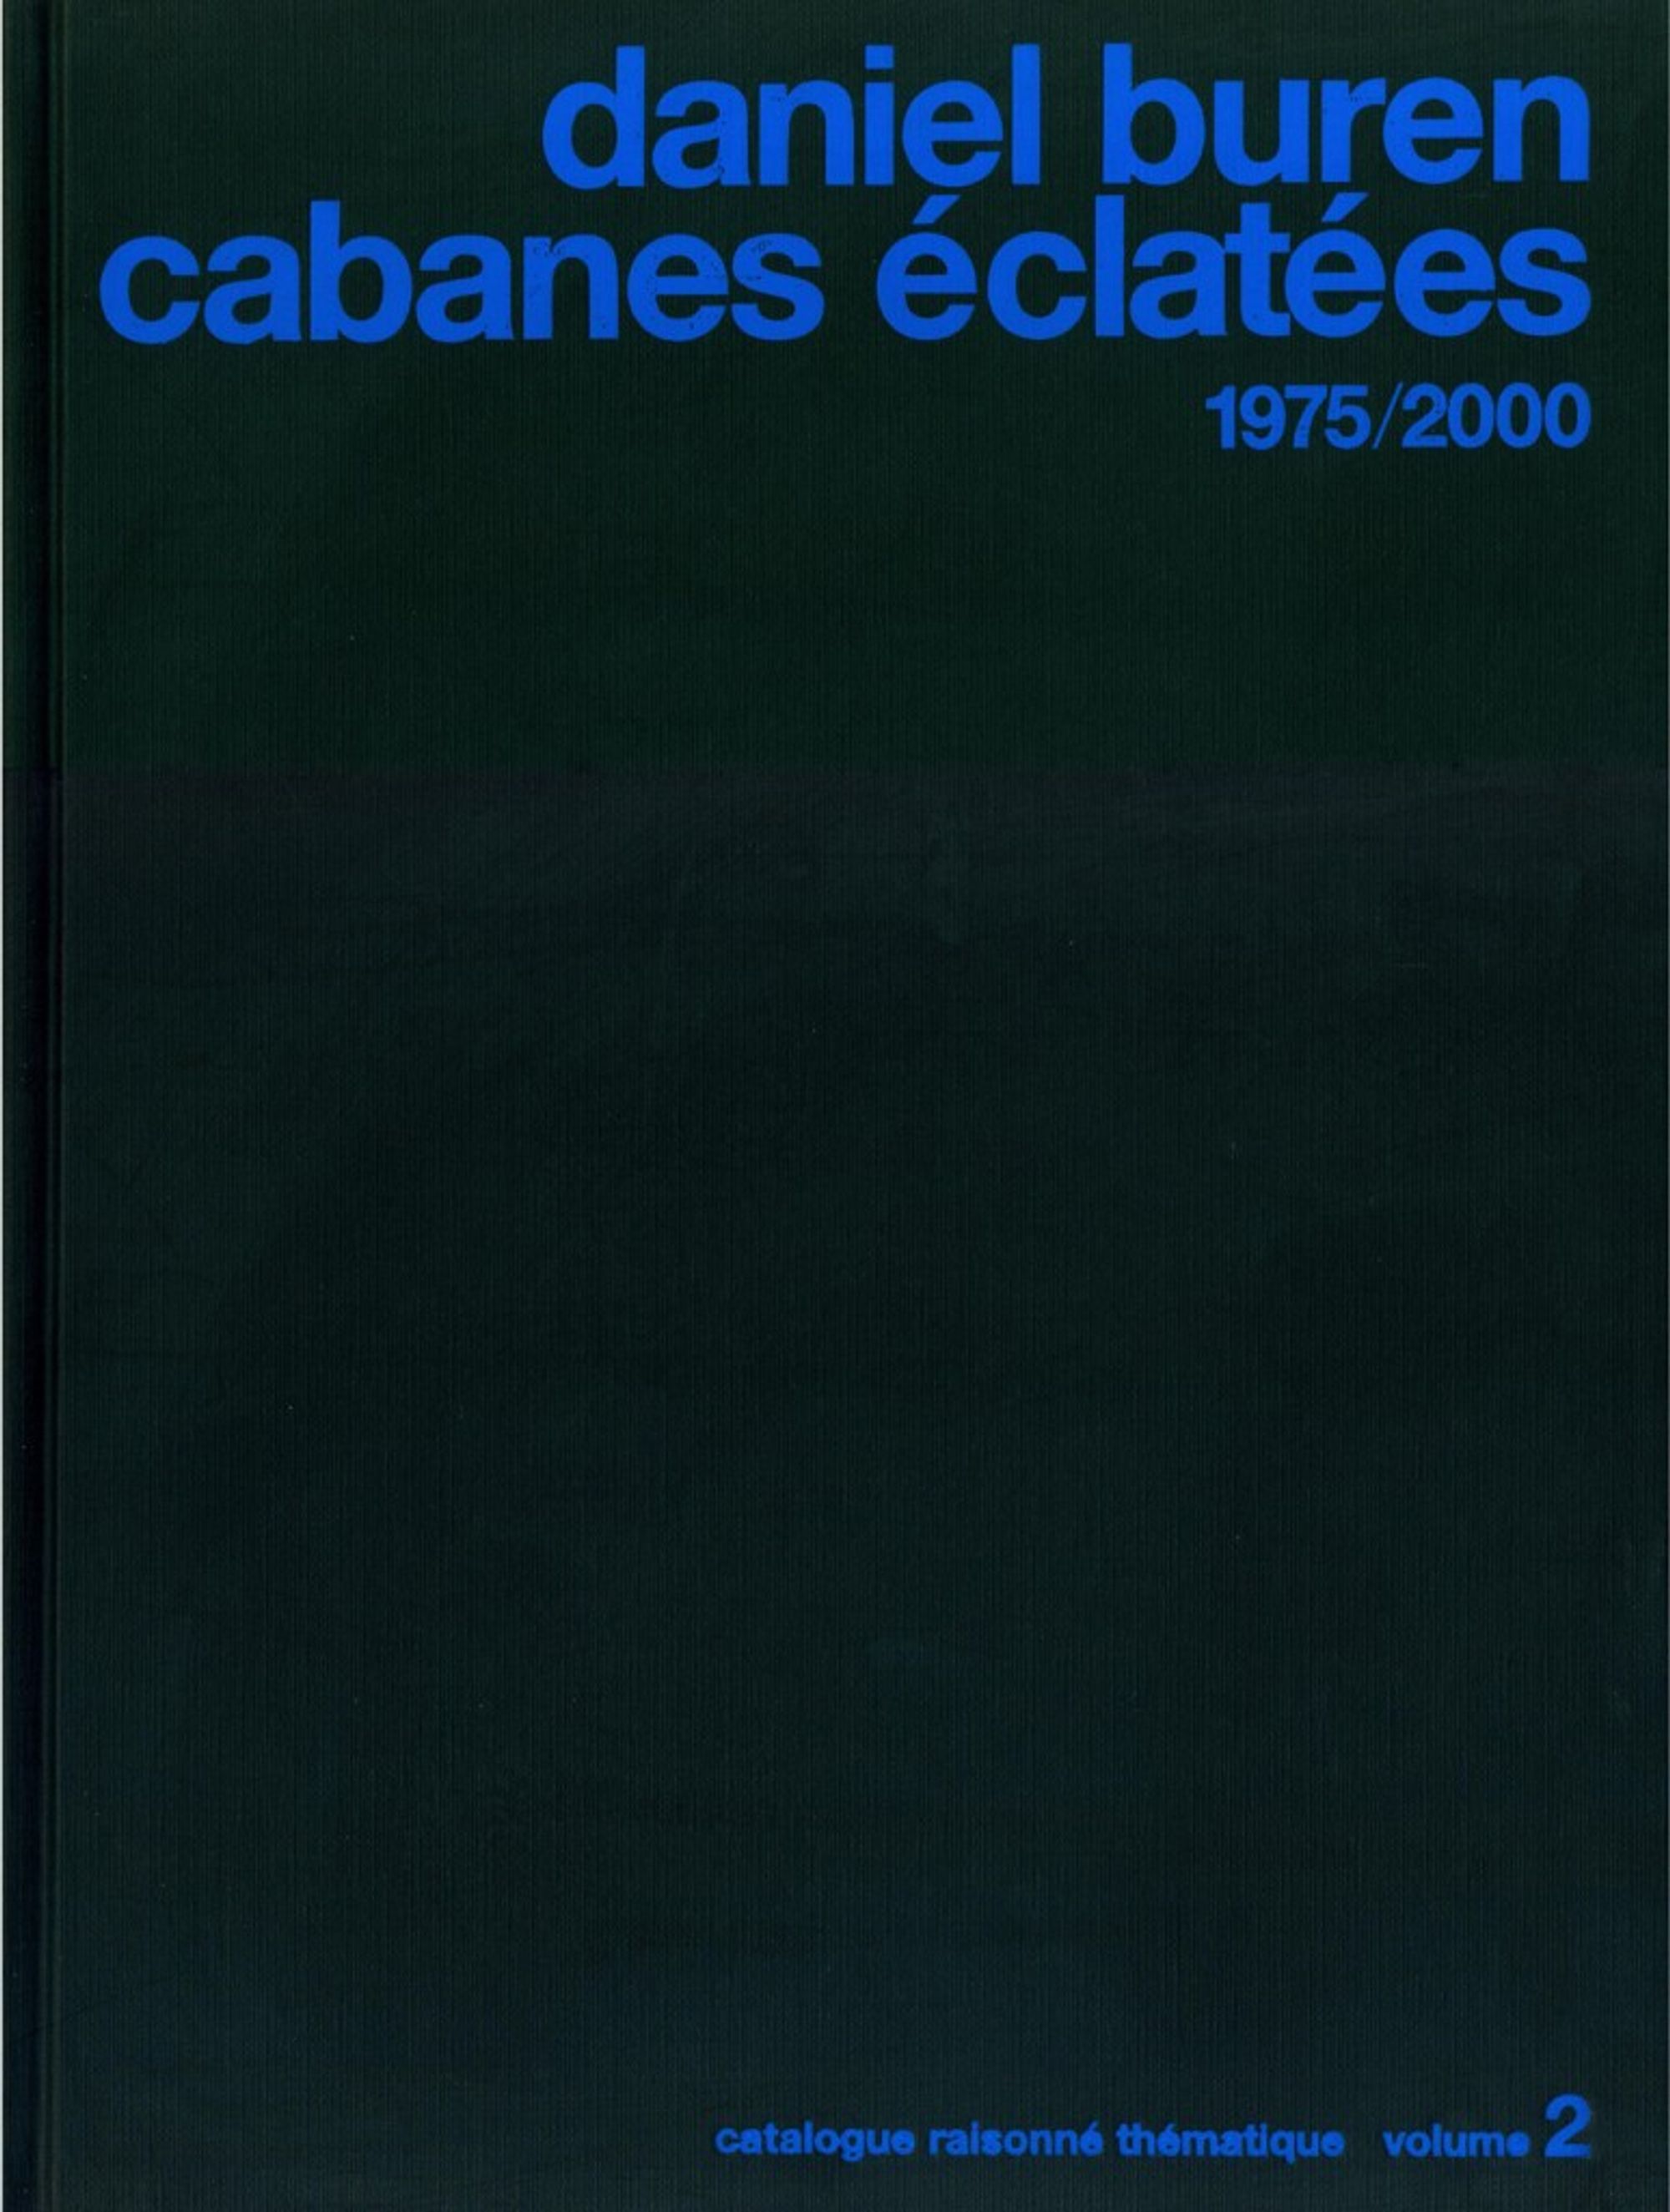 Detail view of Daniel Buren cabanes éclatées 1975/2000 against a plain gray background